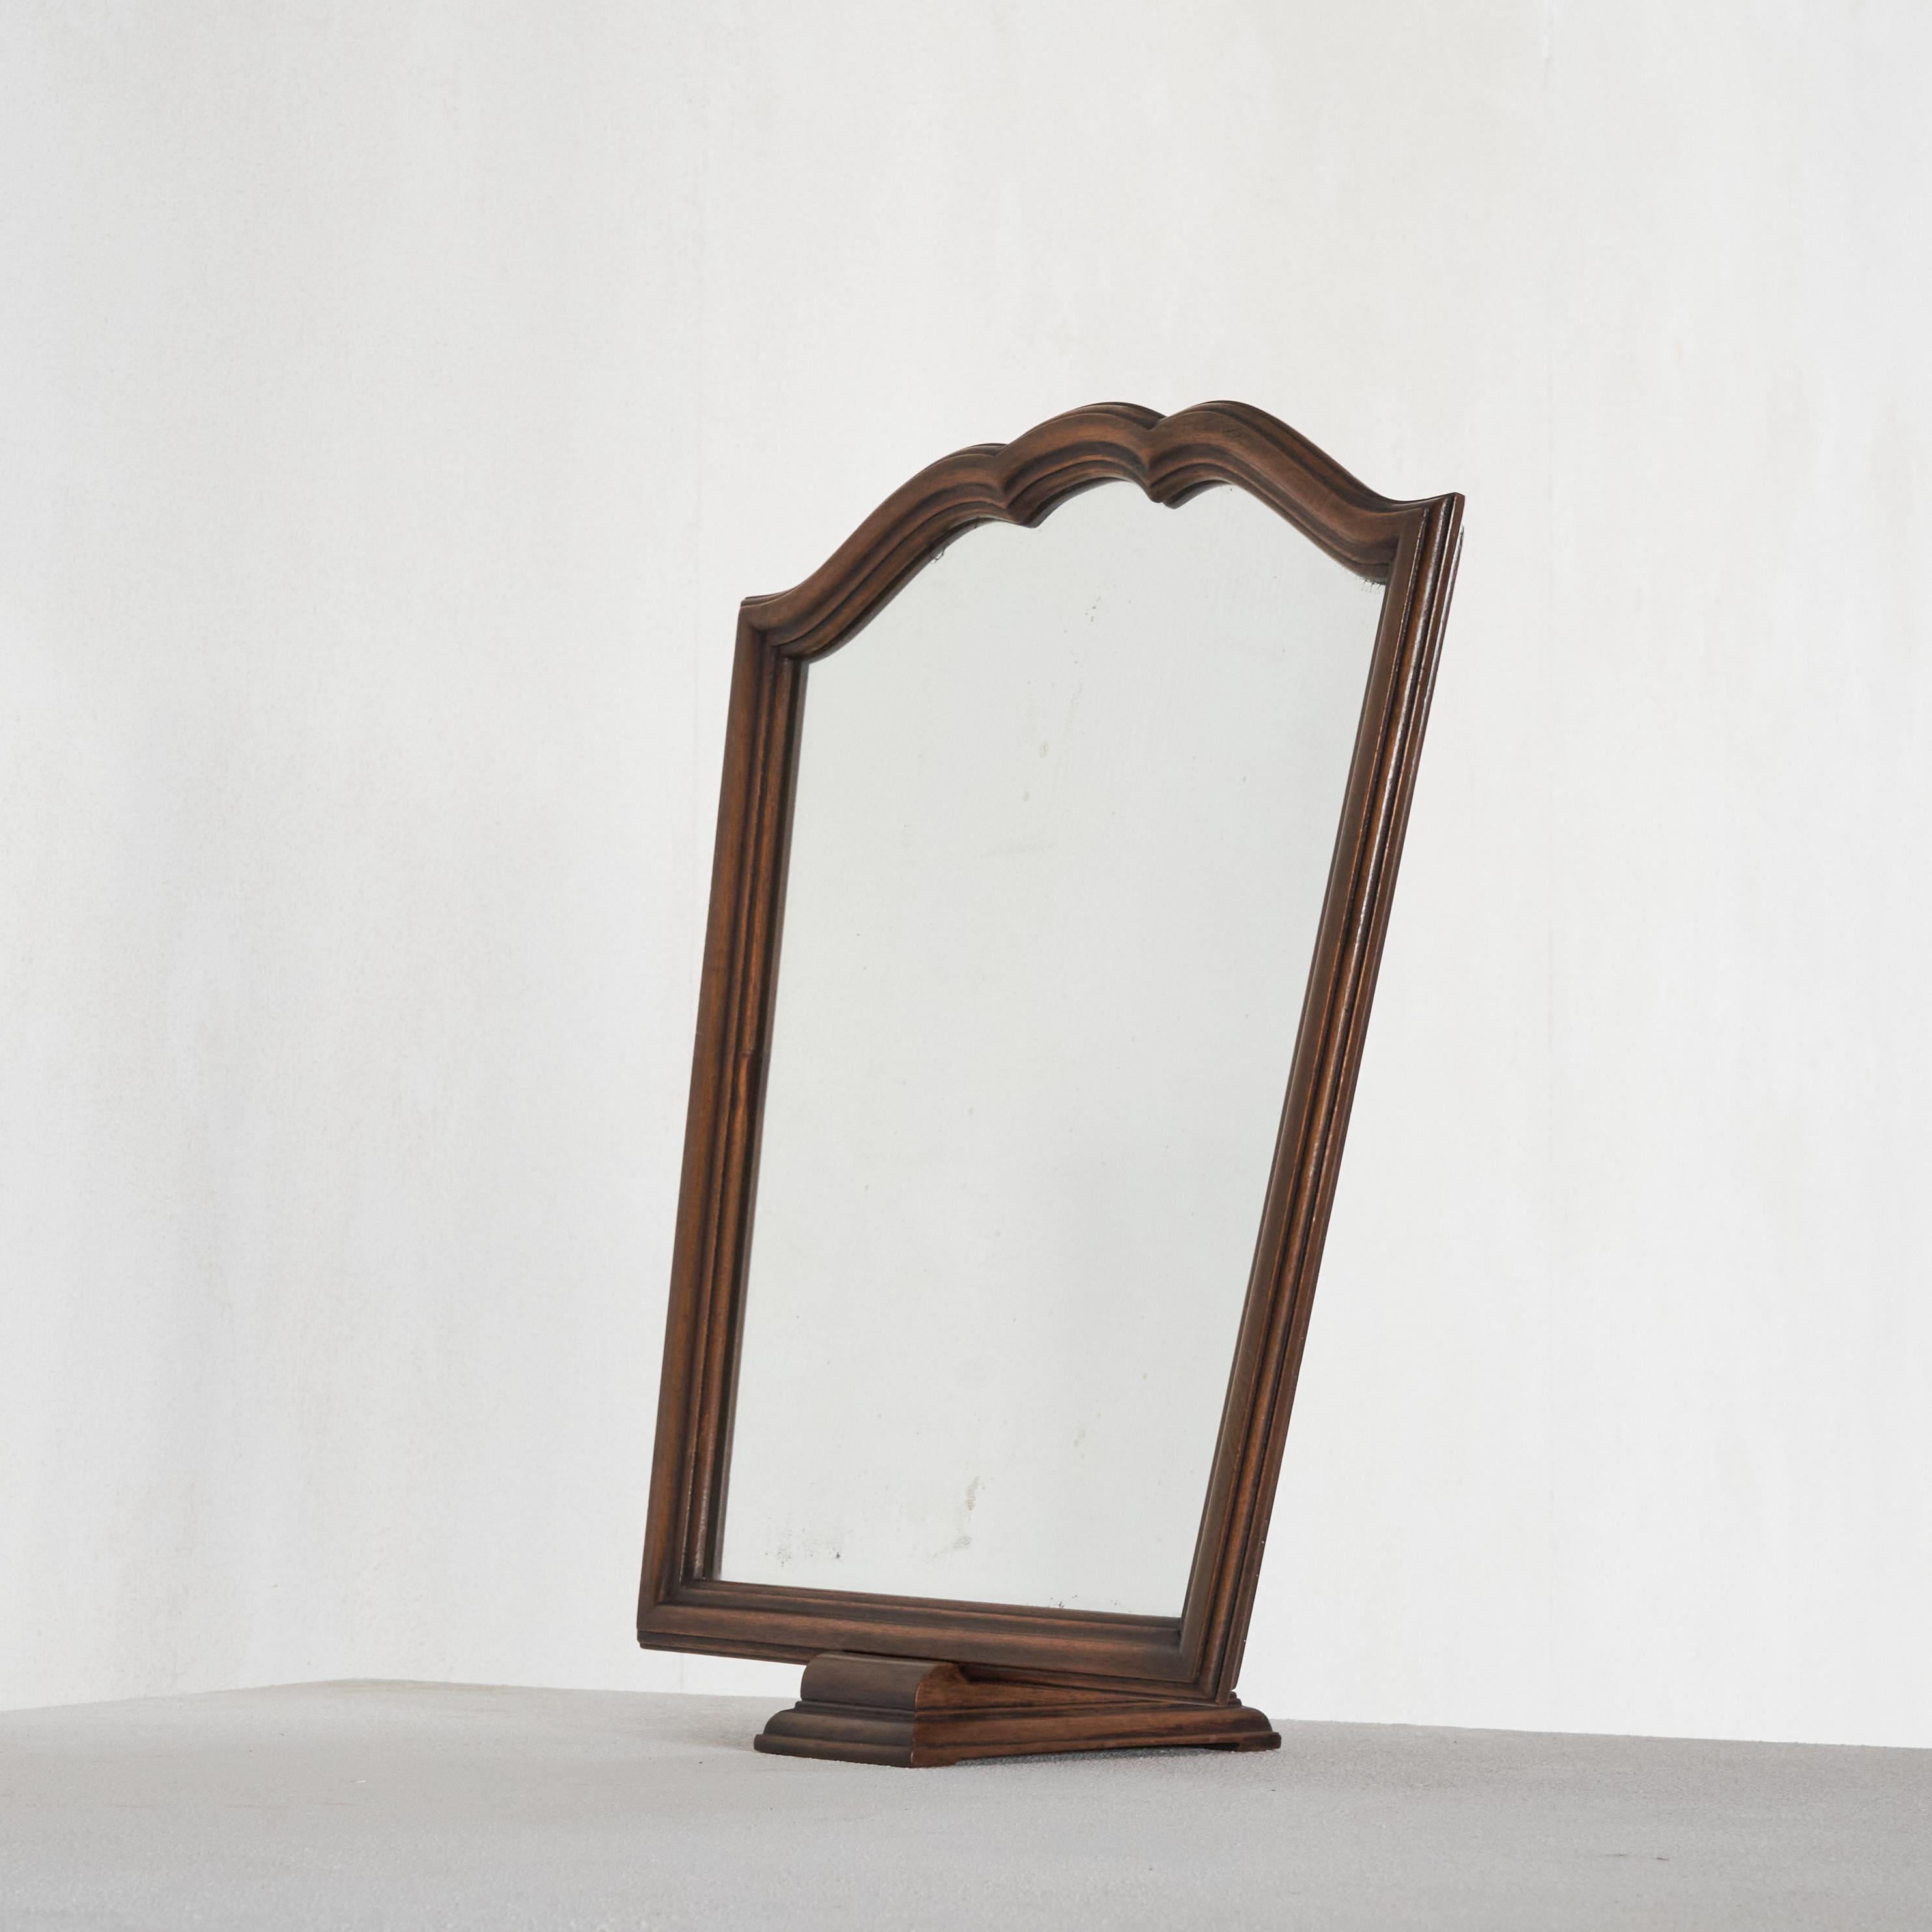 Elegant miroir de table ancien en bois, début du 20e siècle.

Voici un très élégant et délicat miroir de table ou miroir de courtoisie en bois sculpté. Sa taille et sa forme sont idéales pour compléter une table de toilette, un buffet ou un bureau.